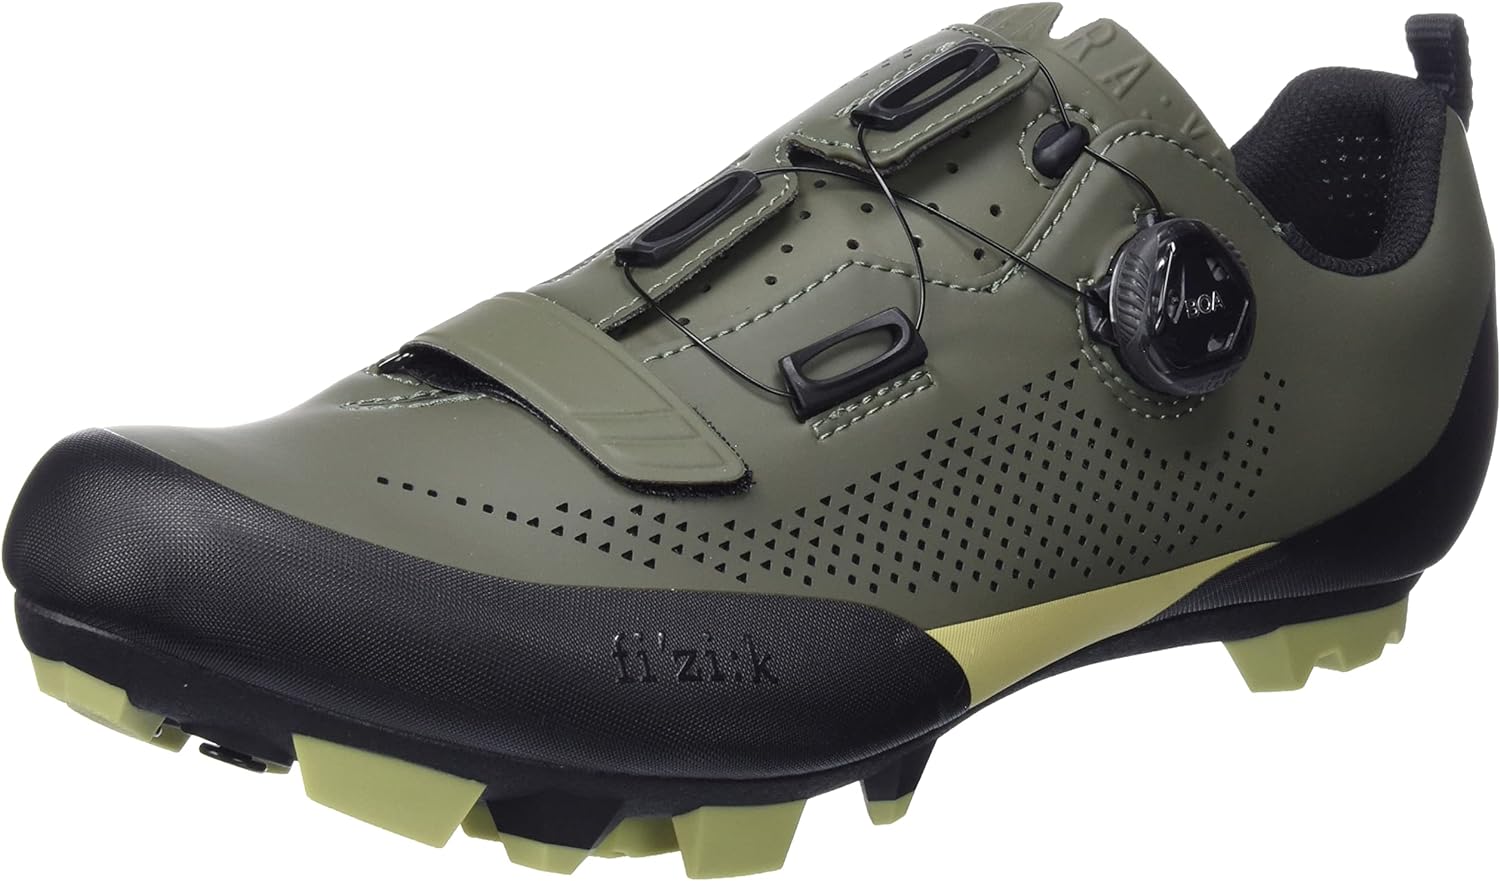 Fizik Terra X5 Cleat Cycling Shoe (Size US 5.5)